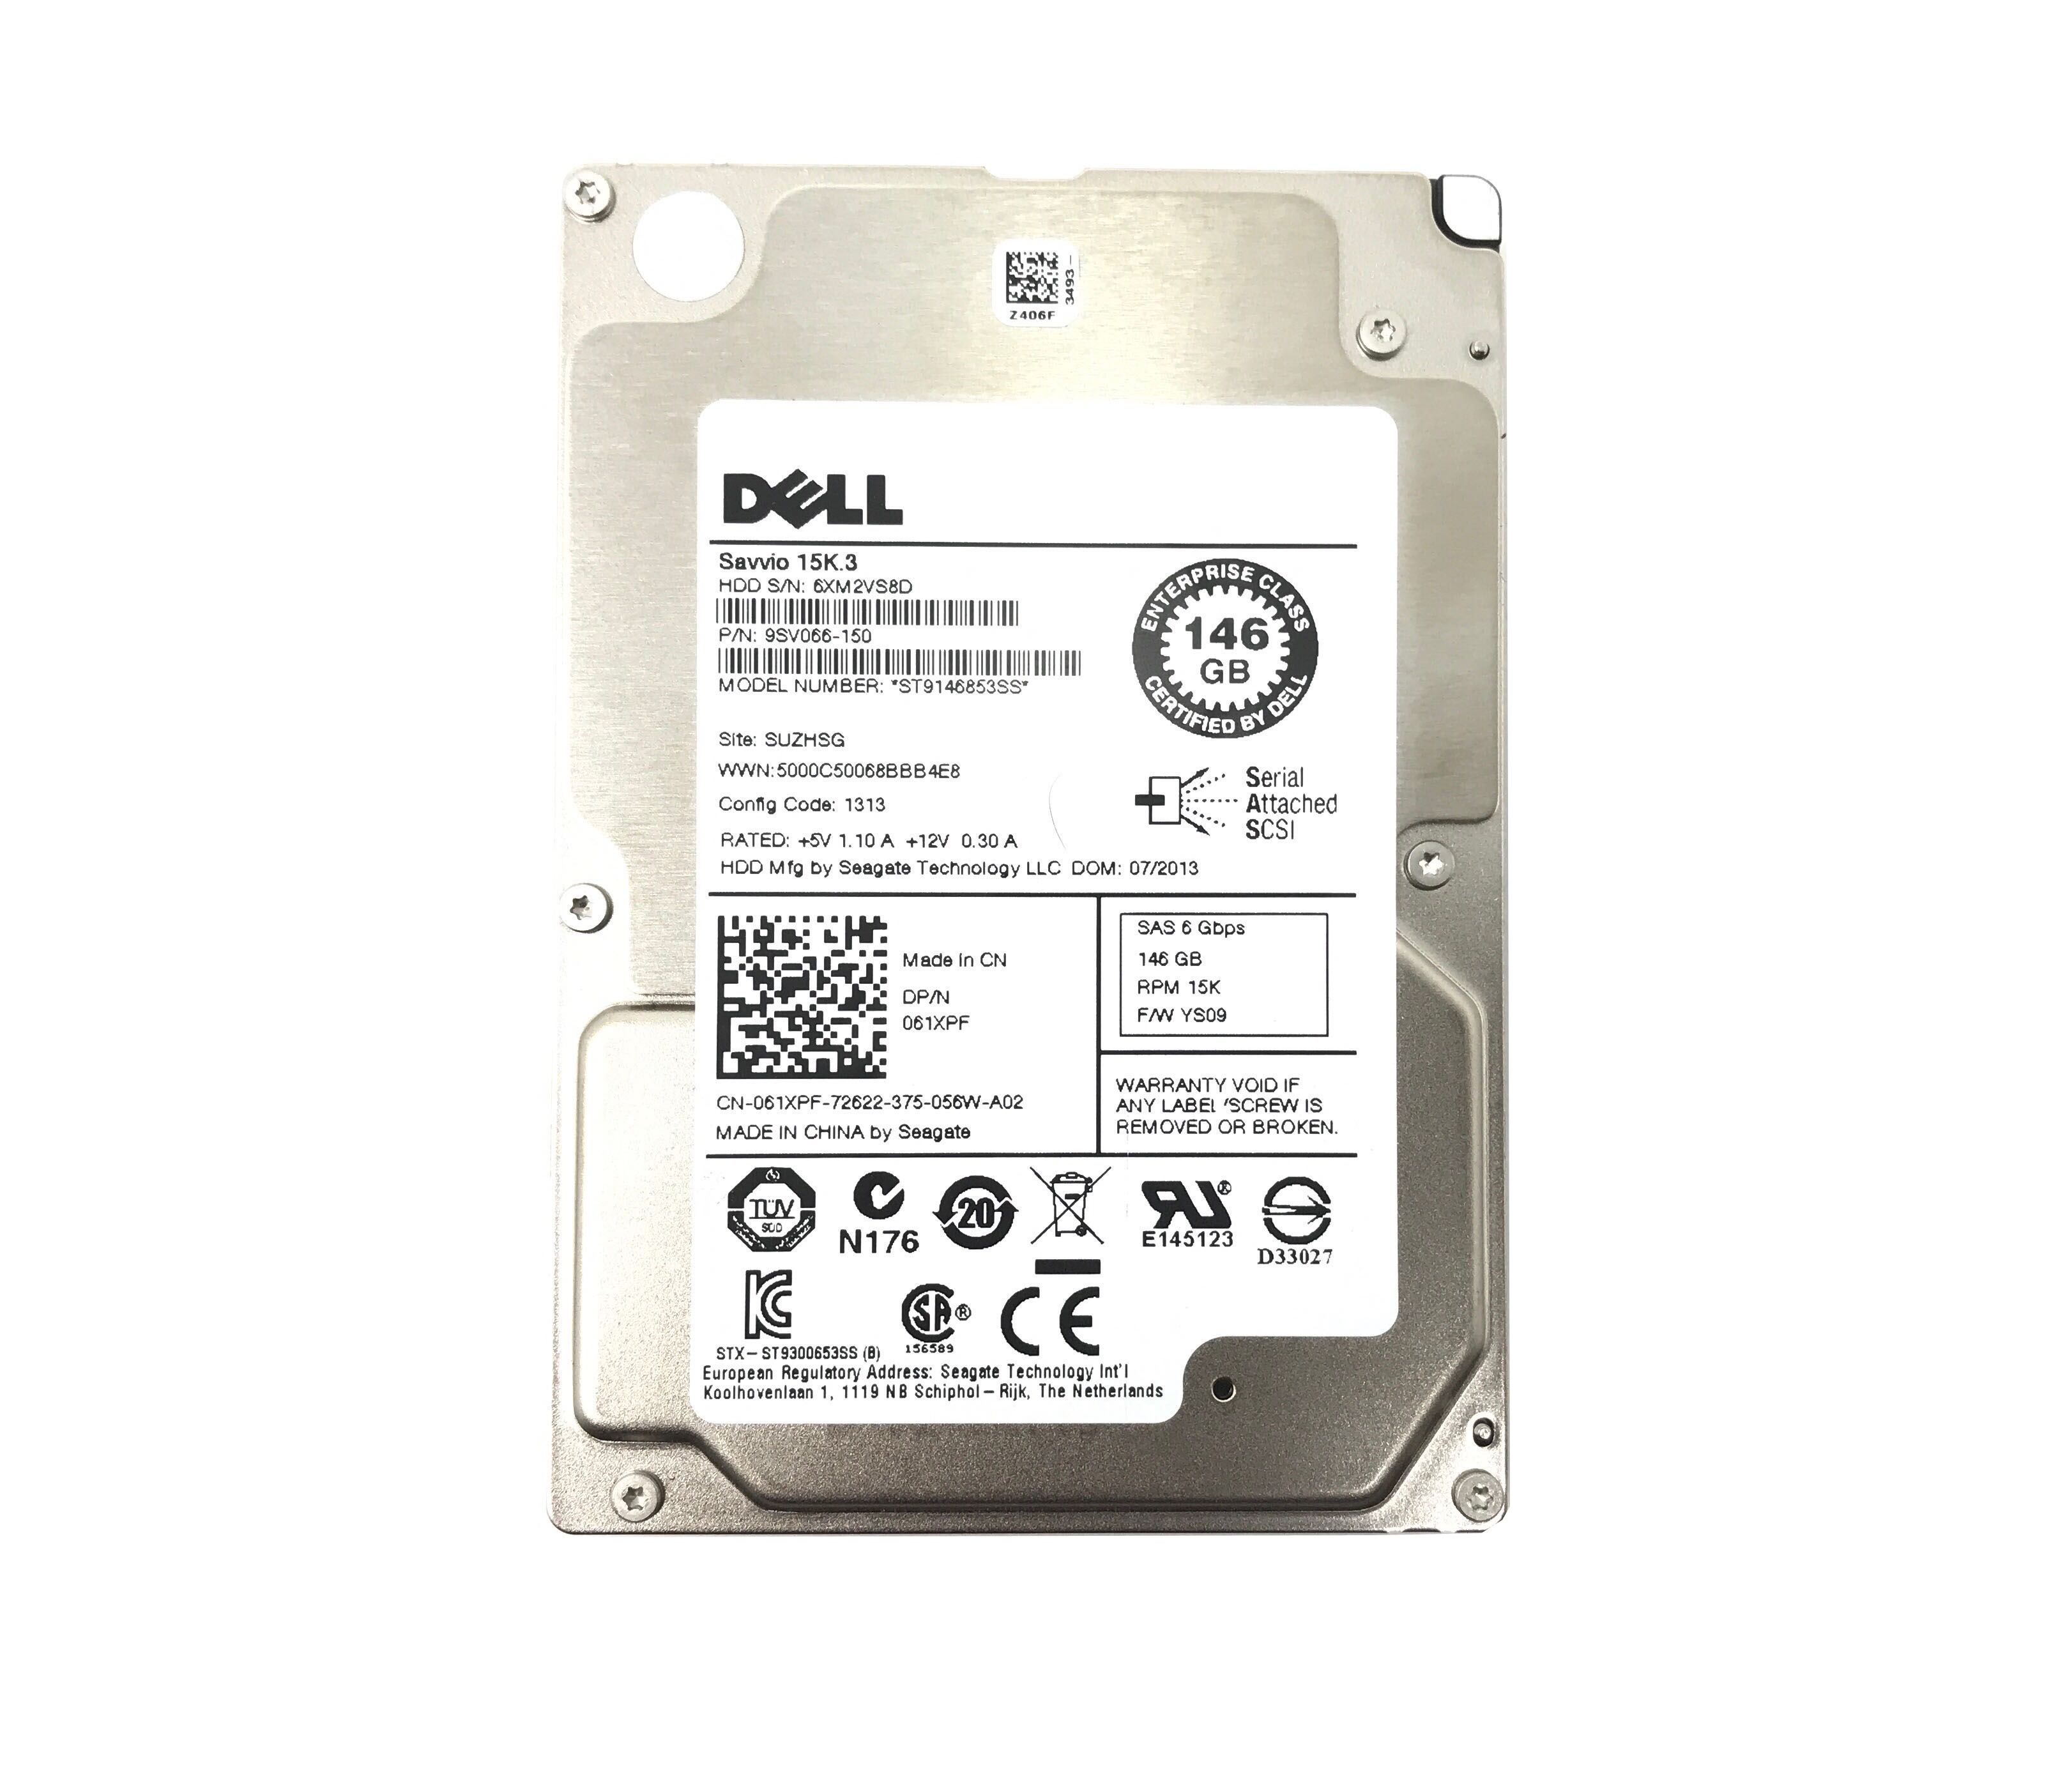 NUOVO Dell vjrg8 Enterprise Seagate 146GB 15K Sas 2.5 "Hard Drive st9146853ss 